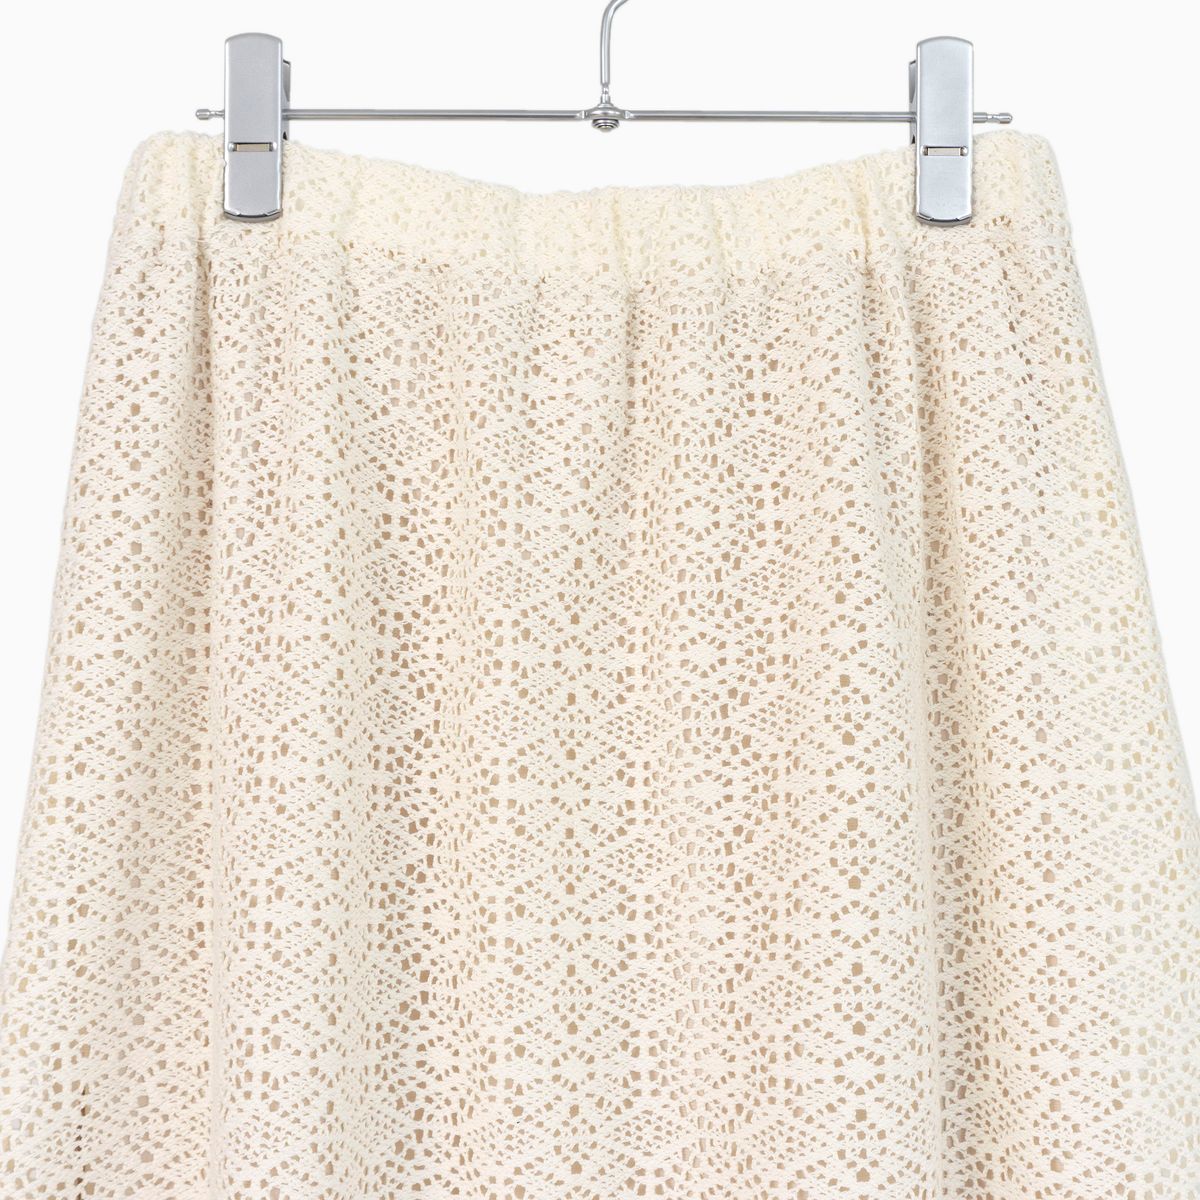 ラッセルレーススカート | Manna | 服飾雑貨・アパレルの仕入れに最適